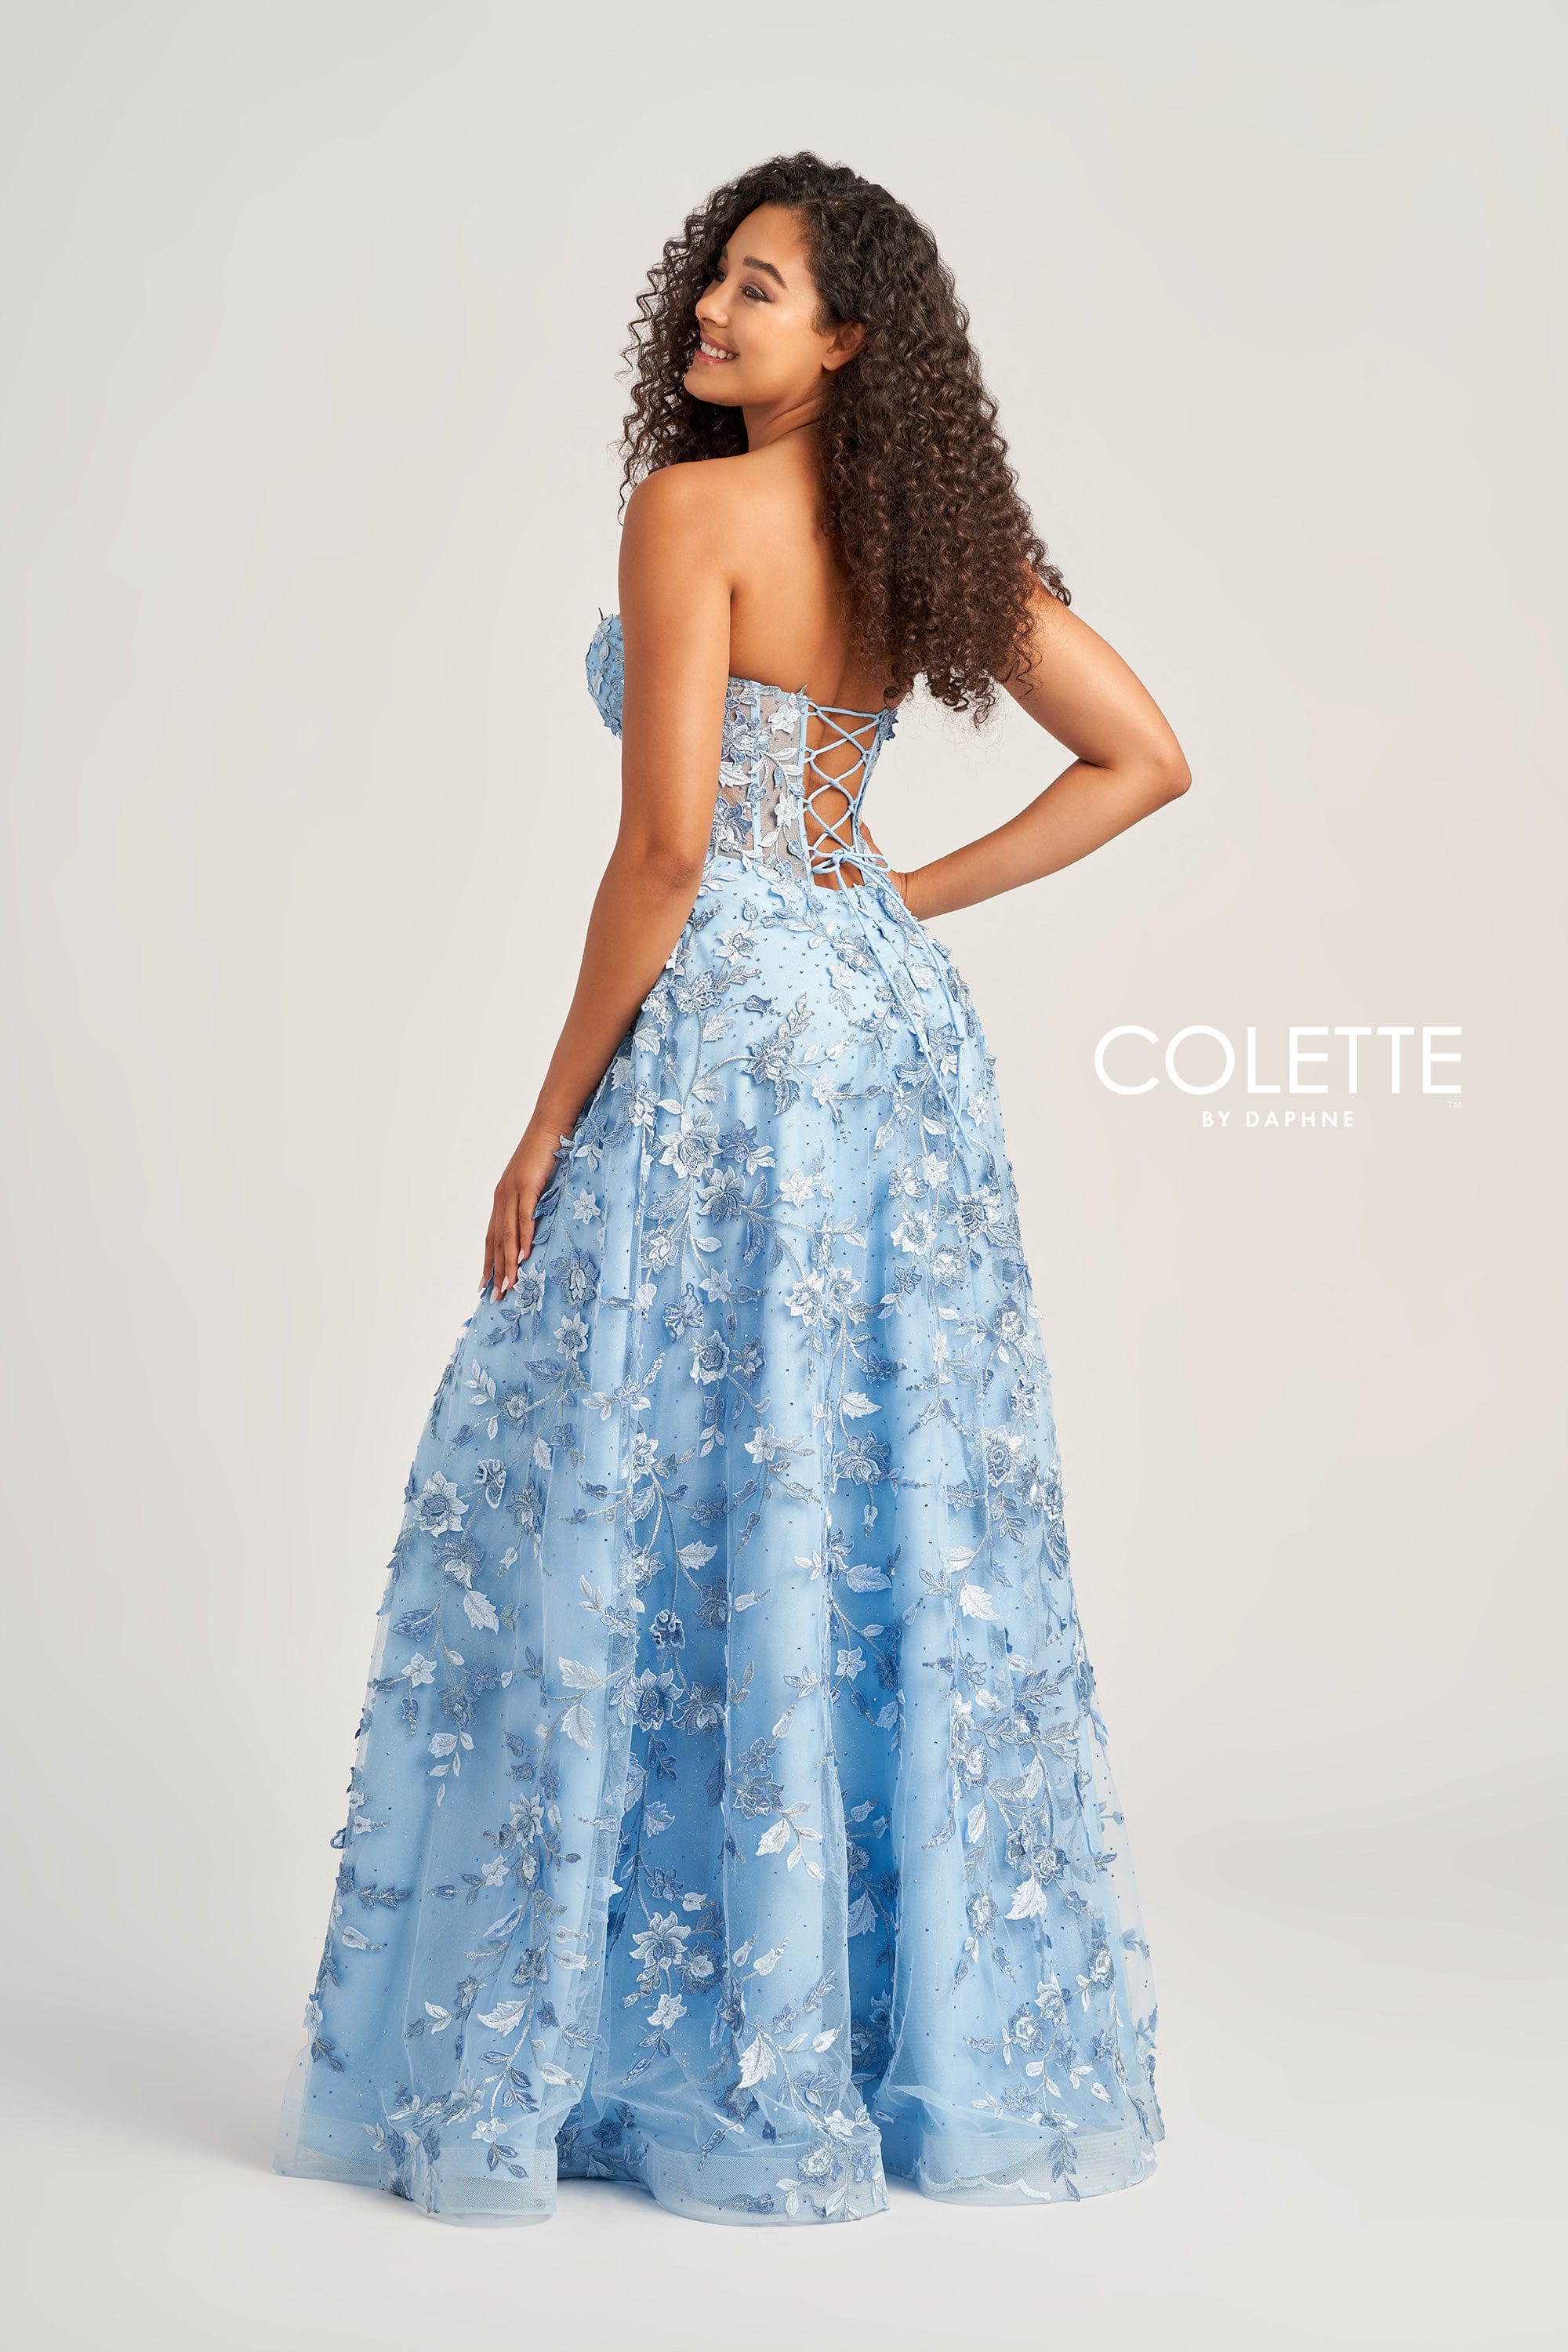 Colette for Mon Cheri Prom Colette: CL5249